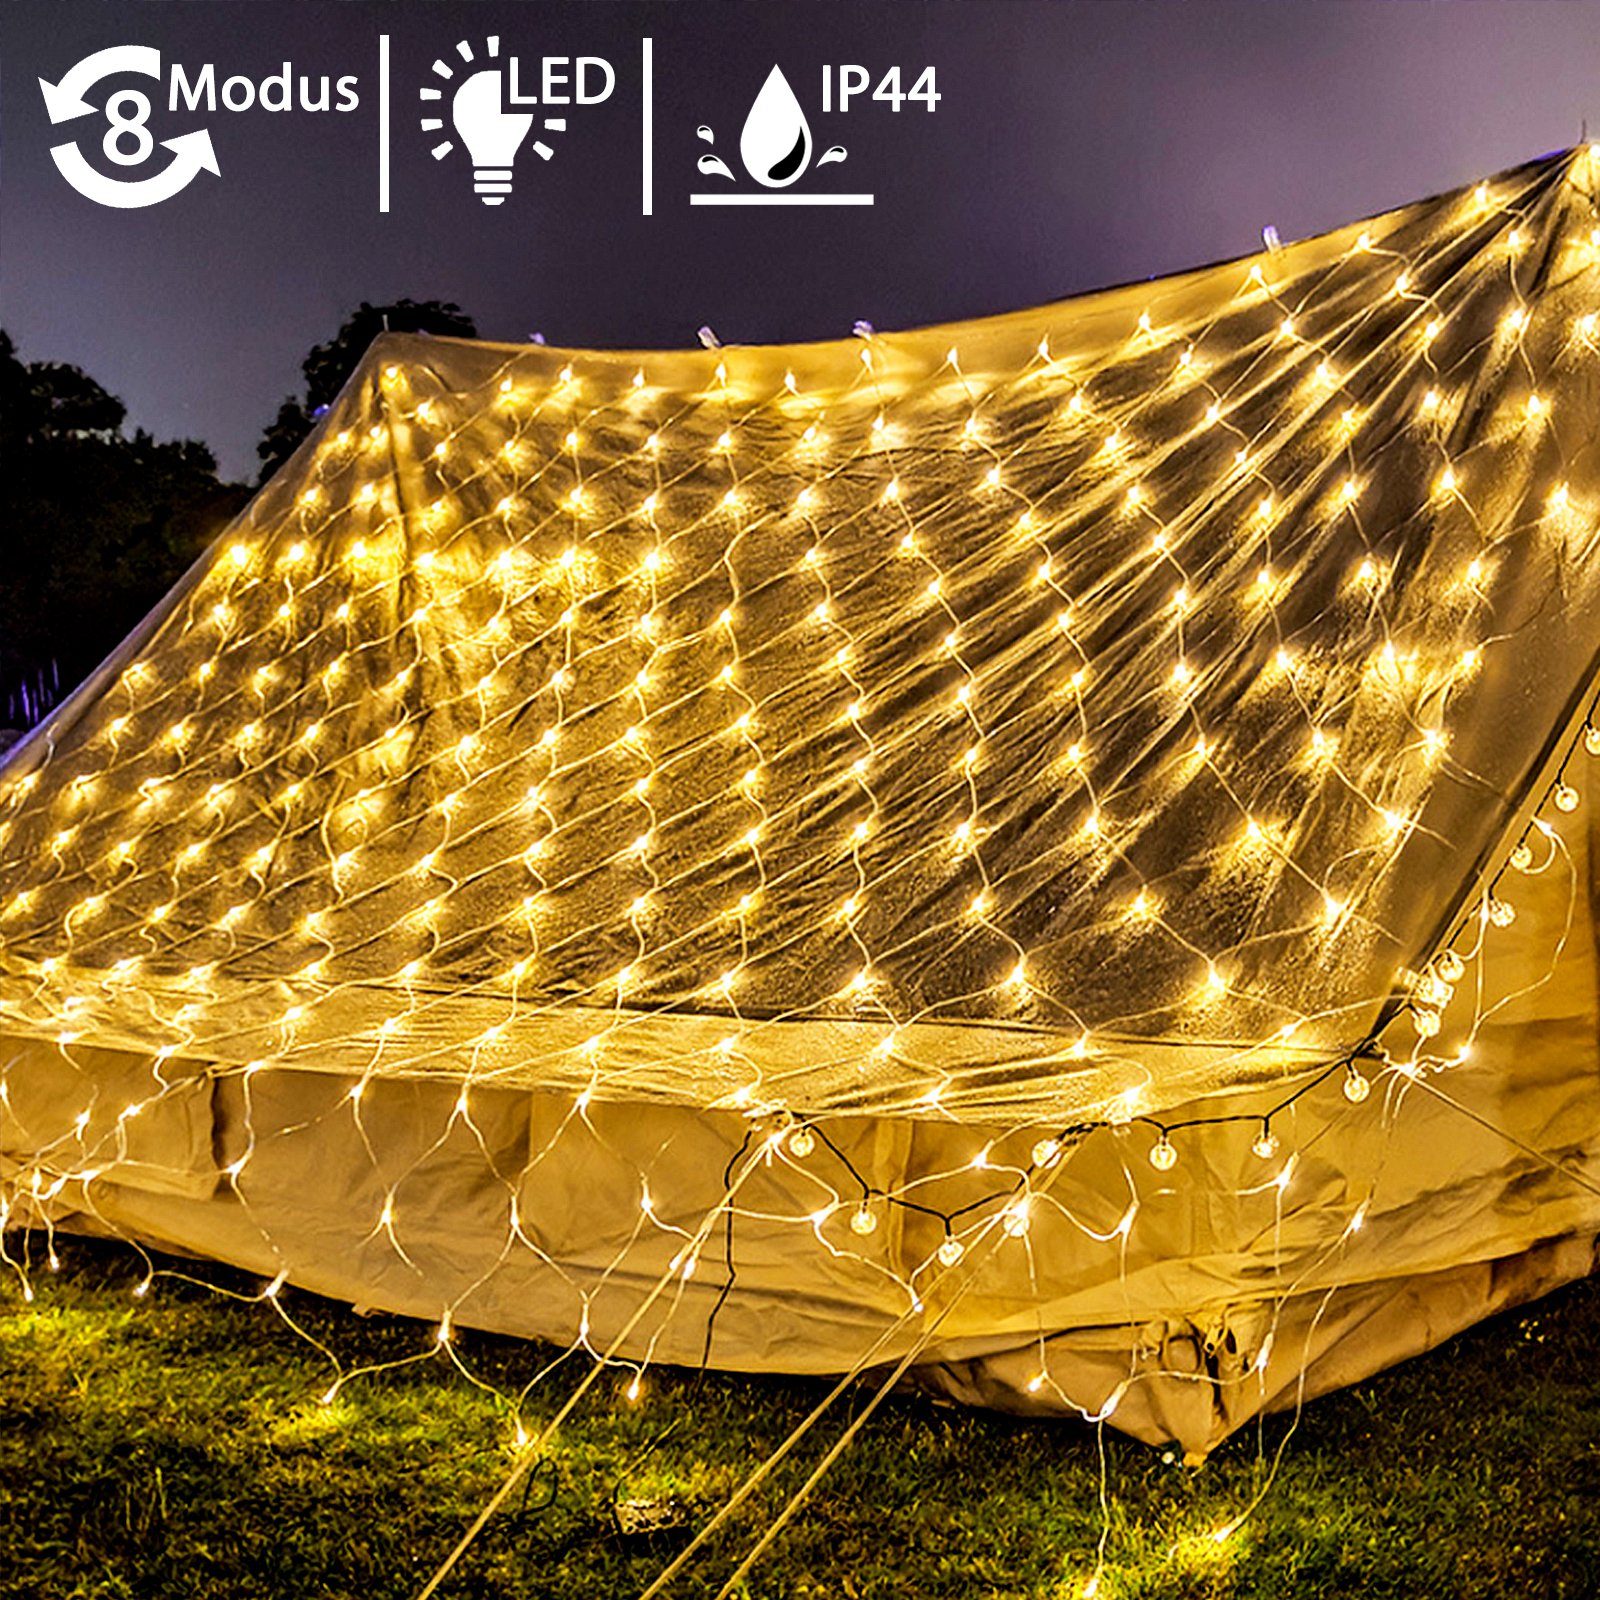 AUFUN LED-Lichternetz Solar für Gartendeko Balkon Hochzeit Weihnachten, Timer 8 Modi Fernbedienung Wasserdicht, Warmweiß, (3x2m / 6x2m / 6x4m)